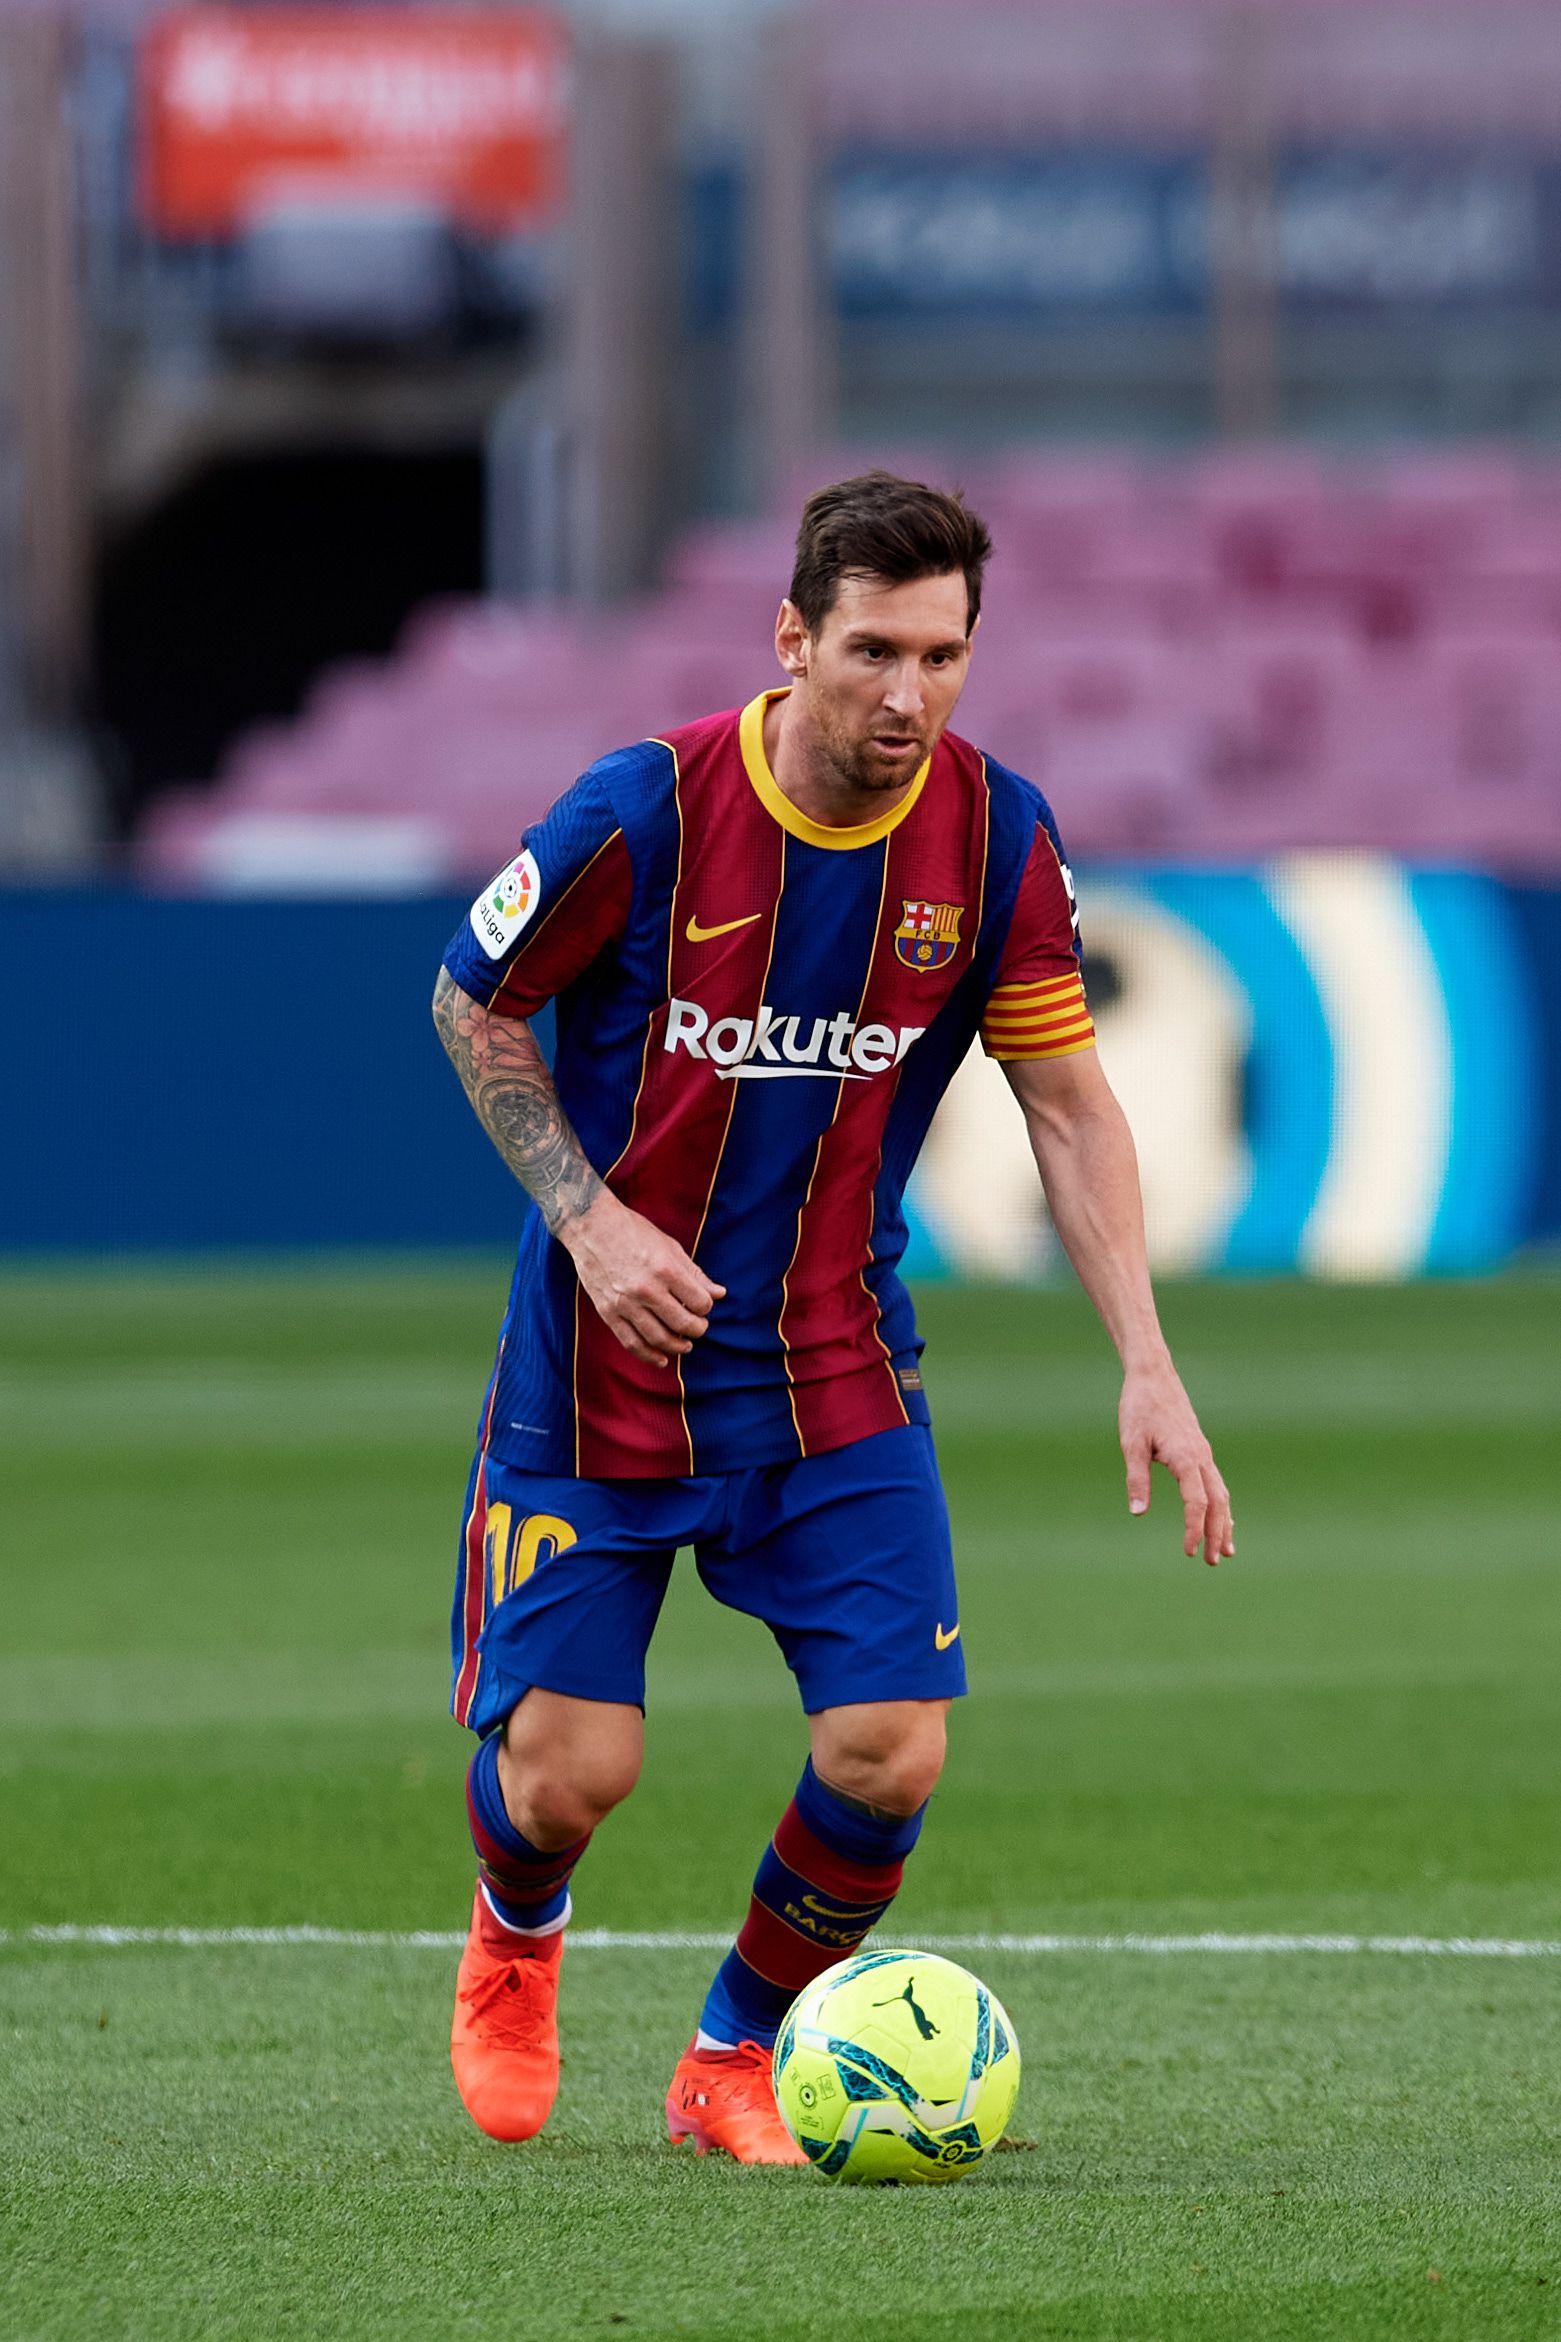 Lionel Messi neve összeforrt a Barcelonáéval, ikonikus alakja lett a spanyol futballklubnak / Fotó: Getty Images